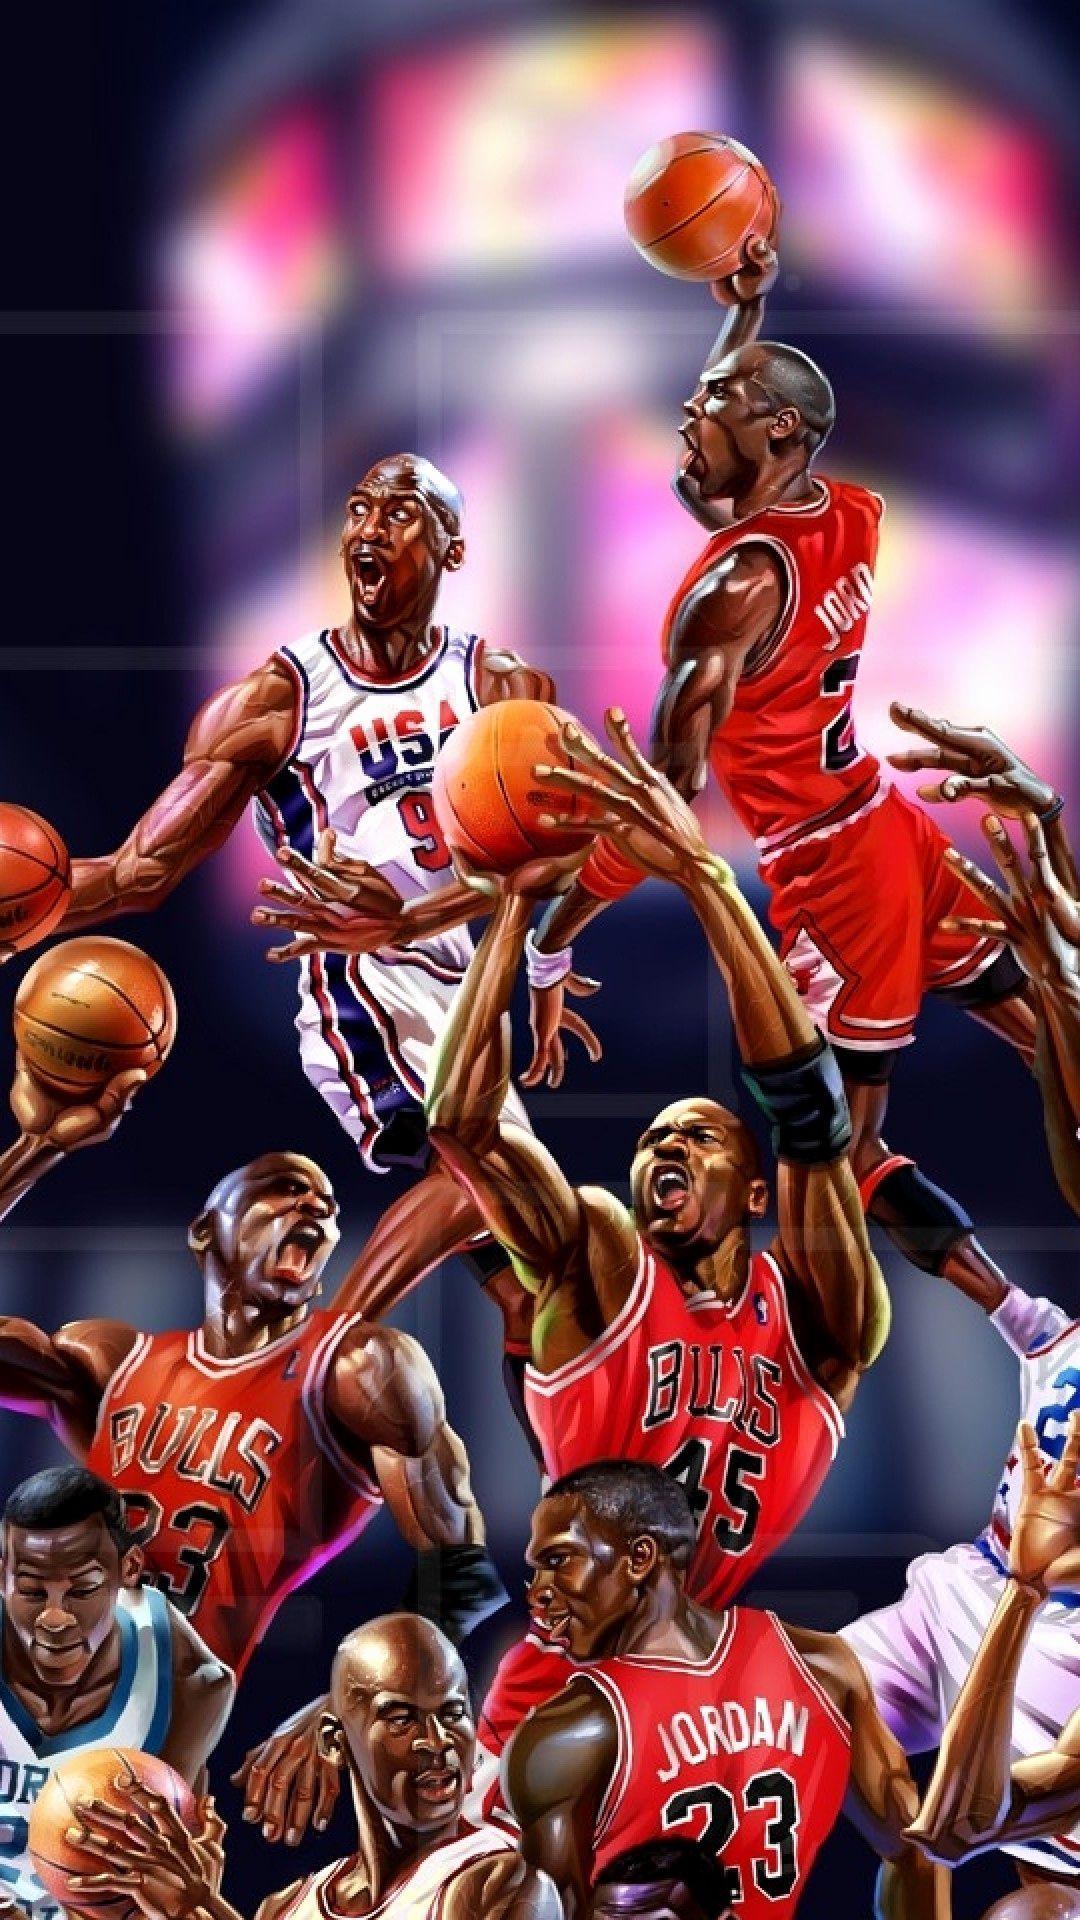 basketball iphone 5 wallpaper